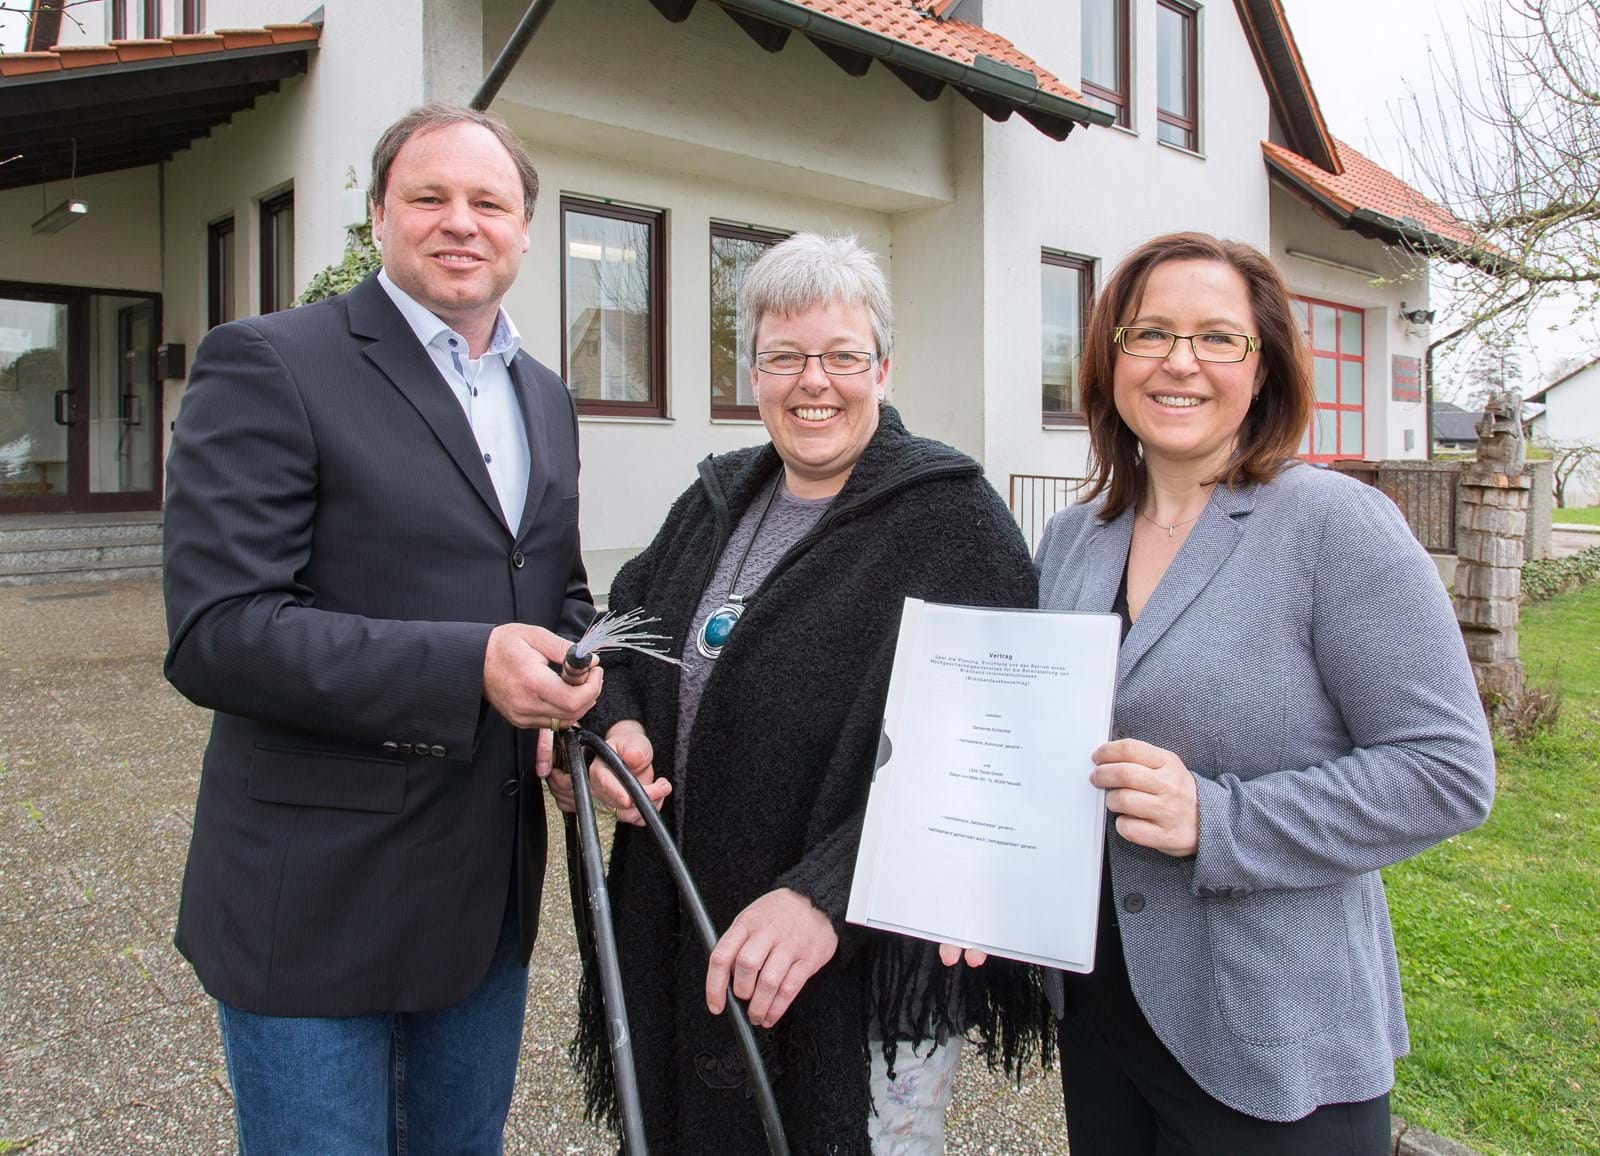 LEW TelNet-Geschäftsführer Johannes Stepperger, Iris Harms, Erste Bürgermeisterin der Gemeinde Kühlenthal, und Gabi Emmerling, Regionalbeauftragte Breitbandausbau Schwaben bei M-net, präsentieren den Kooperationsvertrag für das Projekt.